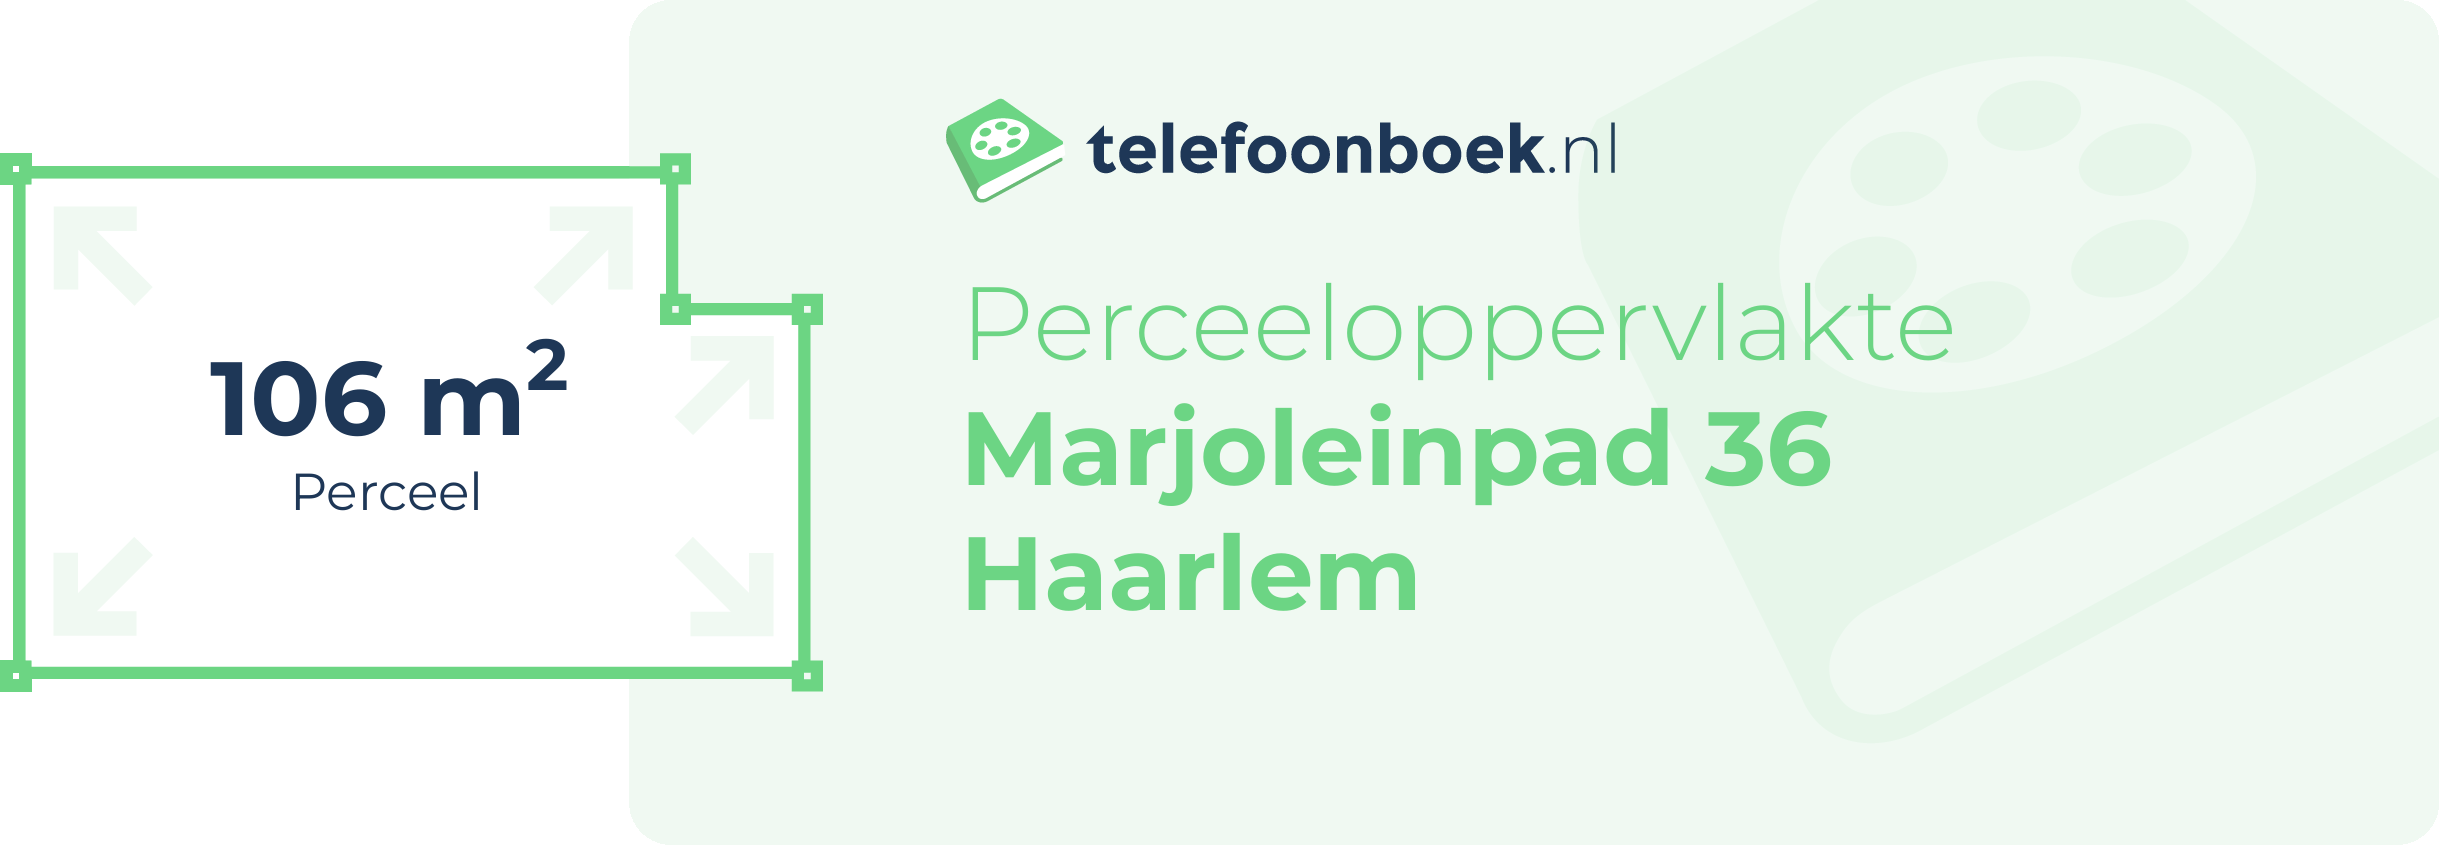 Perceeloppervlakte Marjoleinpad 36 Haarlem